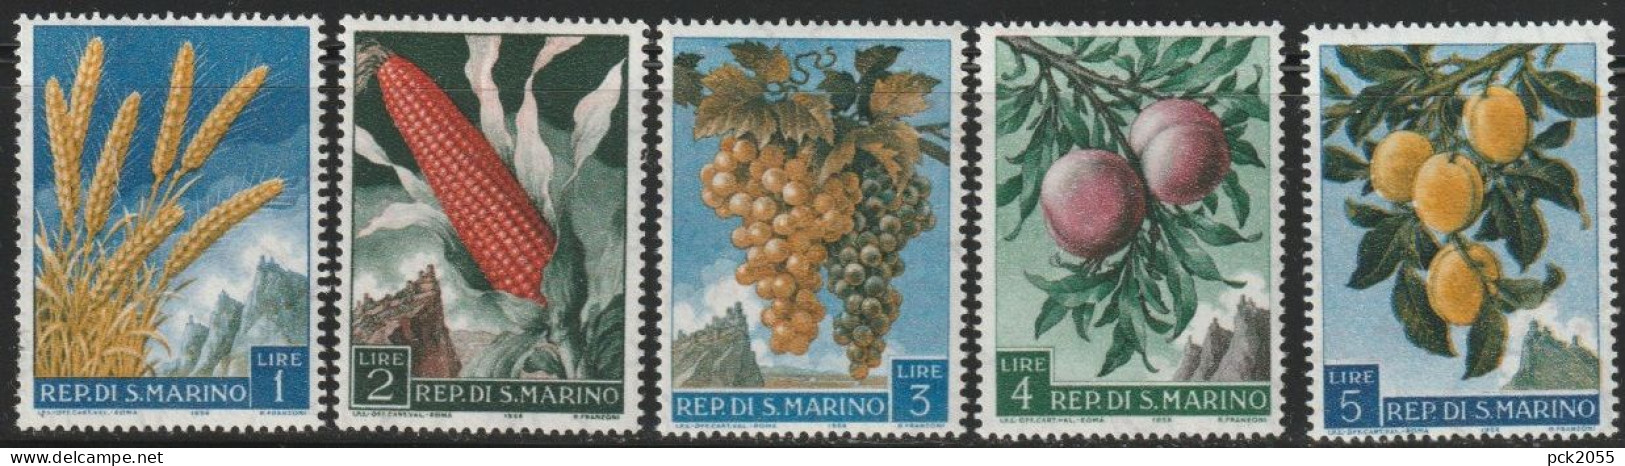 San Marino 1958 Mi Nr. 594 - 598 ** Postfrisch Früchte ( 632) Günstige Versandkosten - Ongebruikt